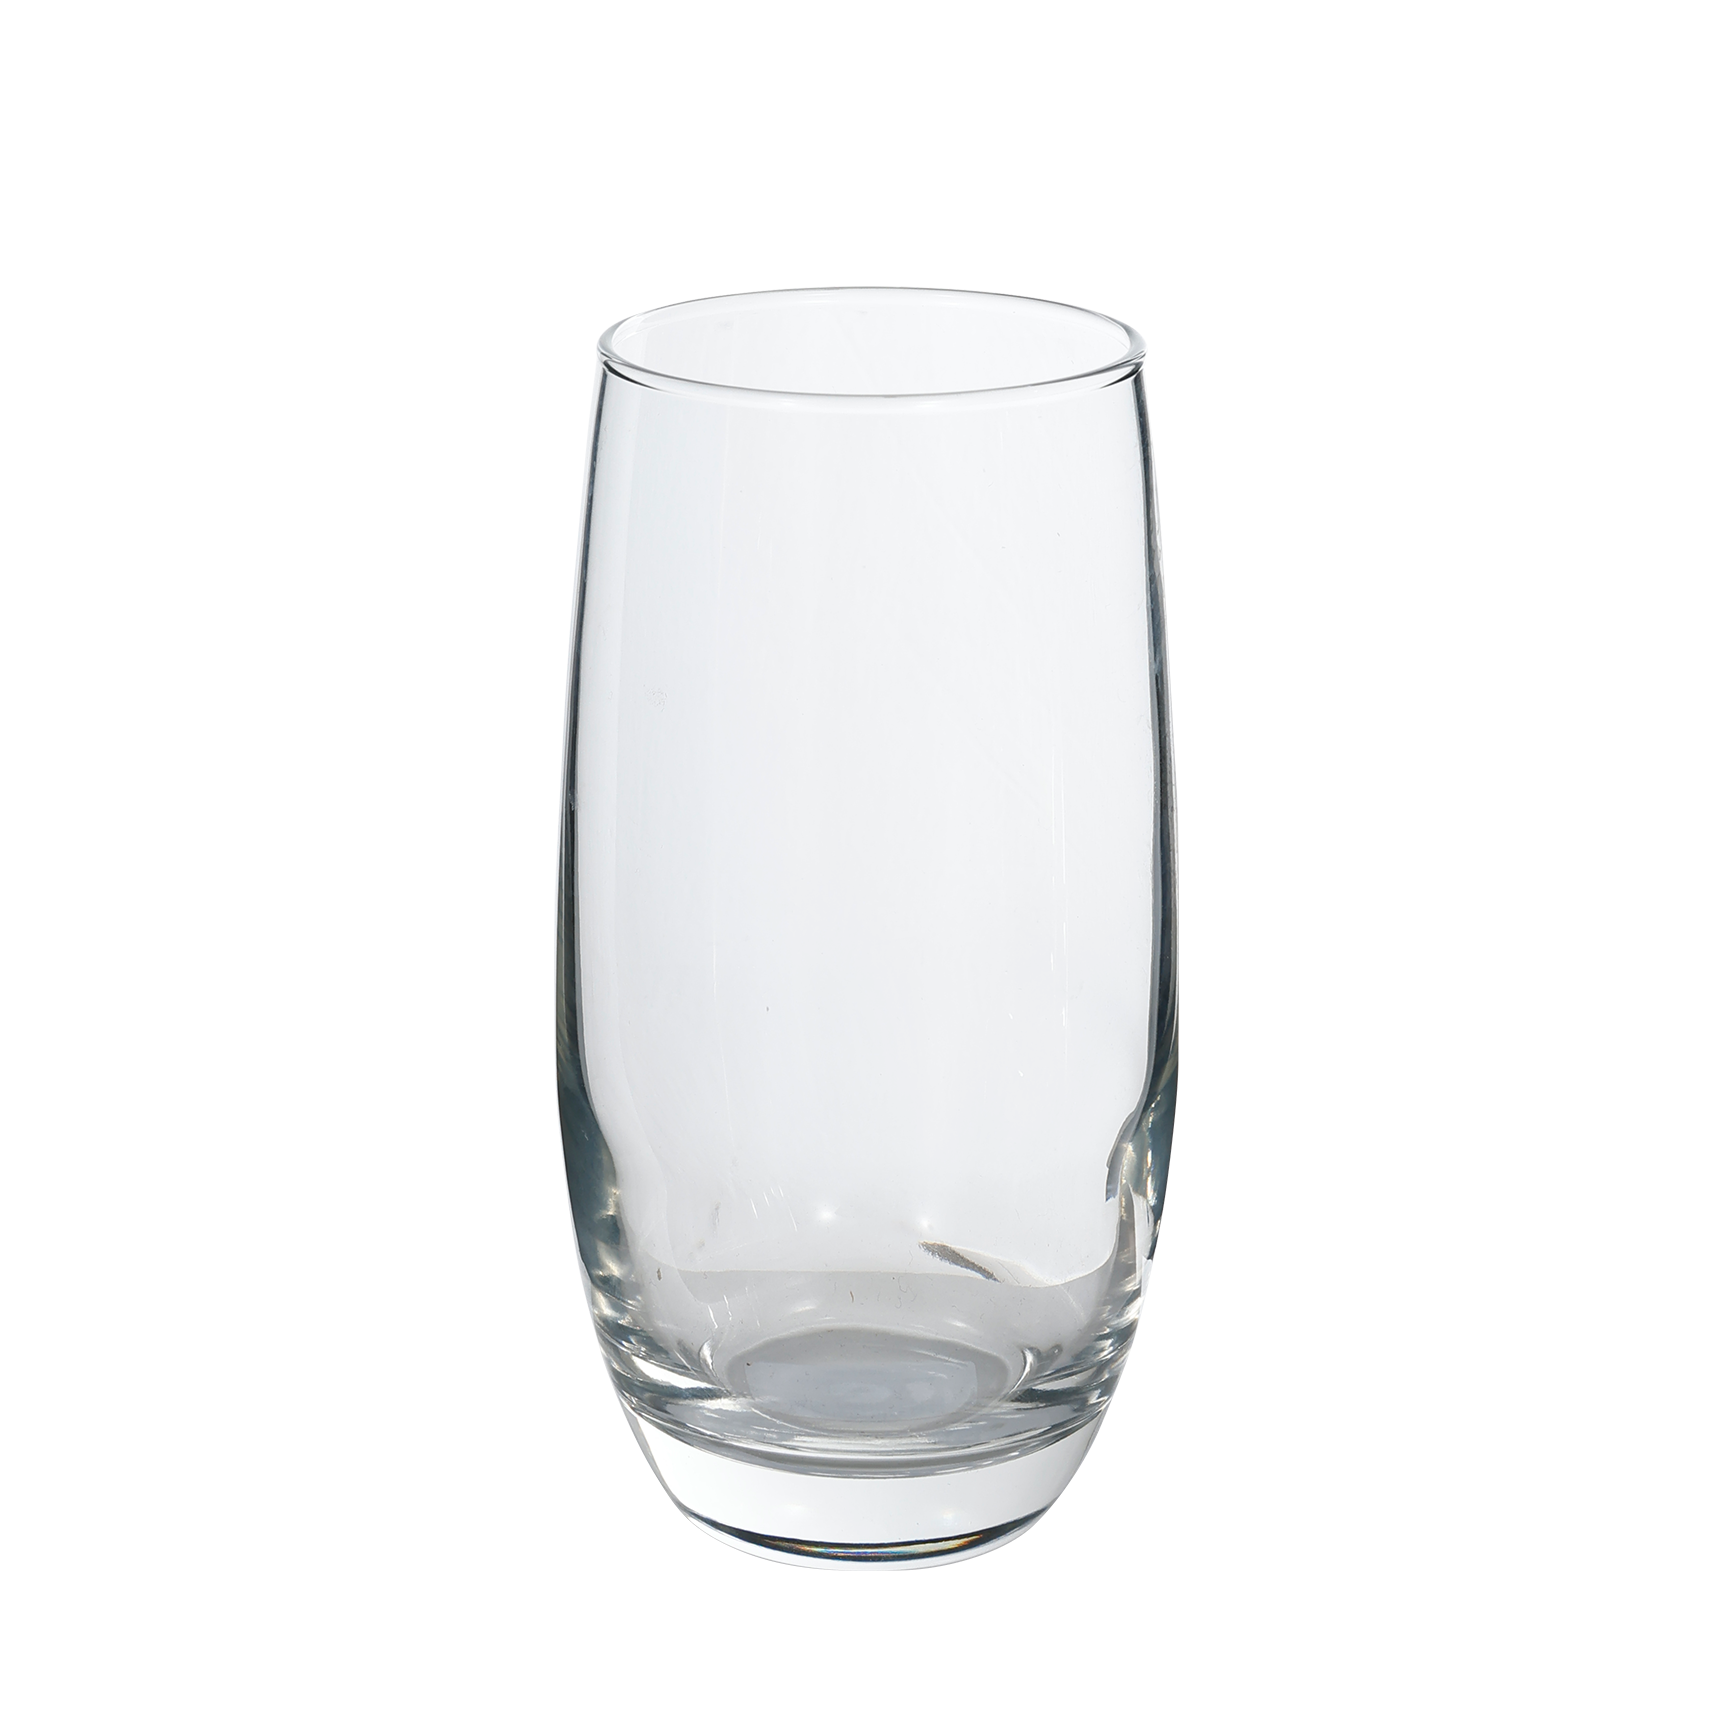 Juice glass